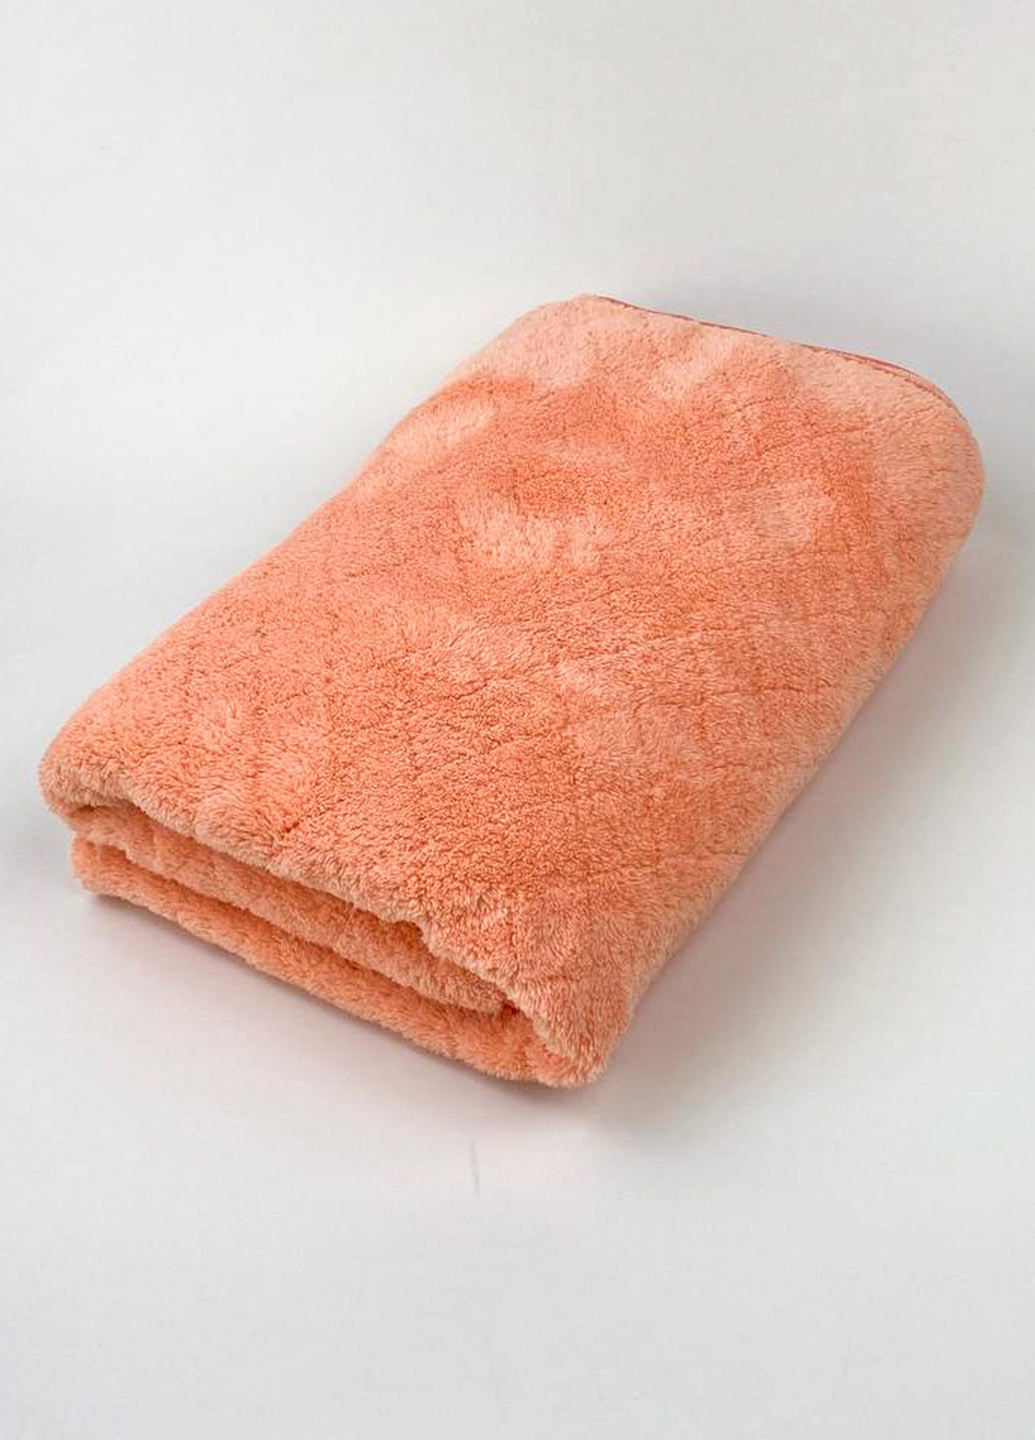 Homedec полотенце лицевое микрофибра 100х50 см однотонный персиковый производство - Турция